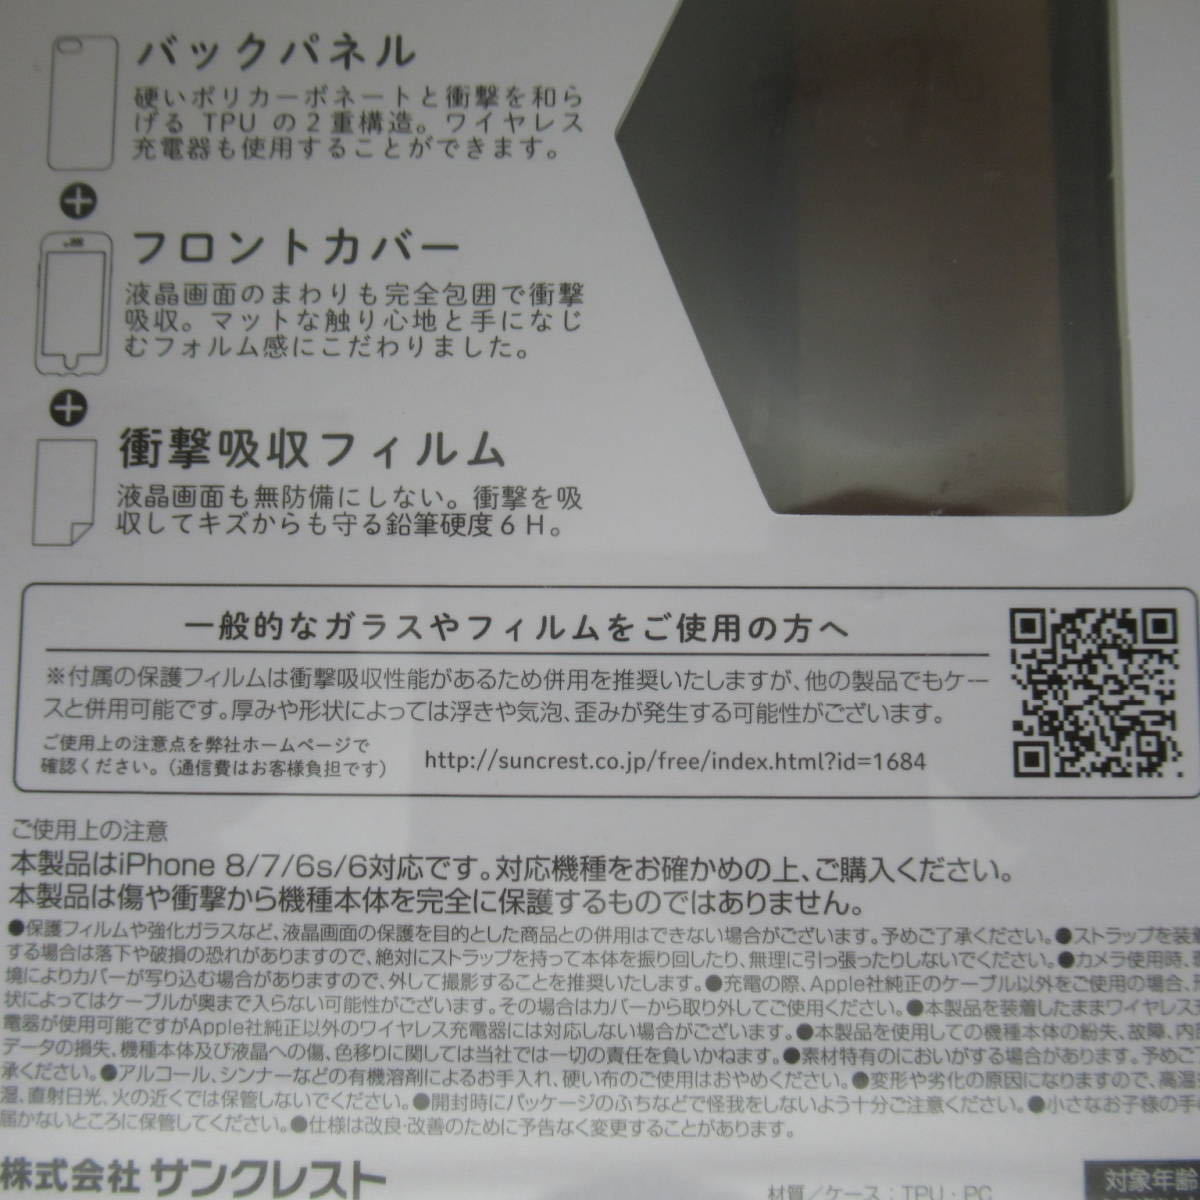 【未使用品】 iphone 携帯カバー 保護フィルム ケース フューシャピンク IJOY iPhone SE 第2、3世代 iPhone 8/7/6s/6対応 15_画像4